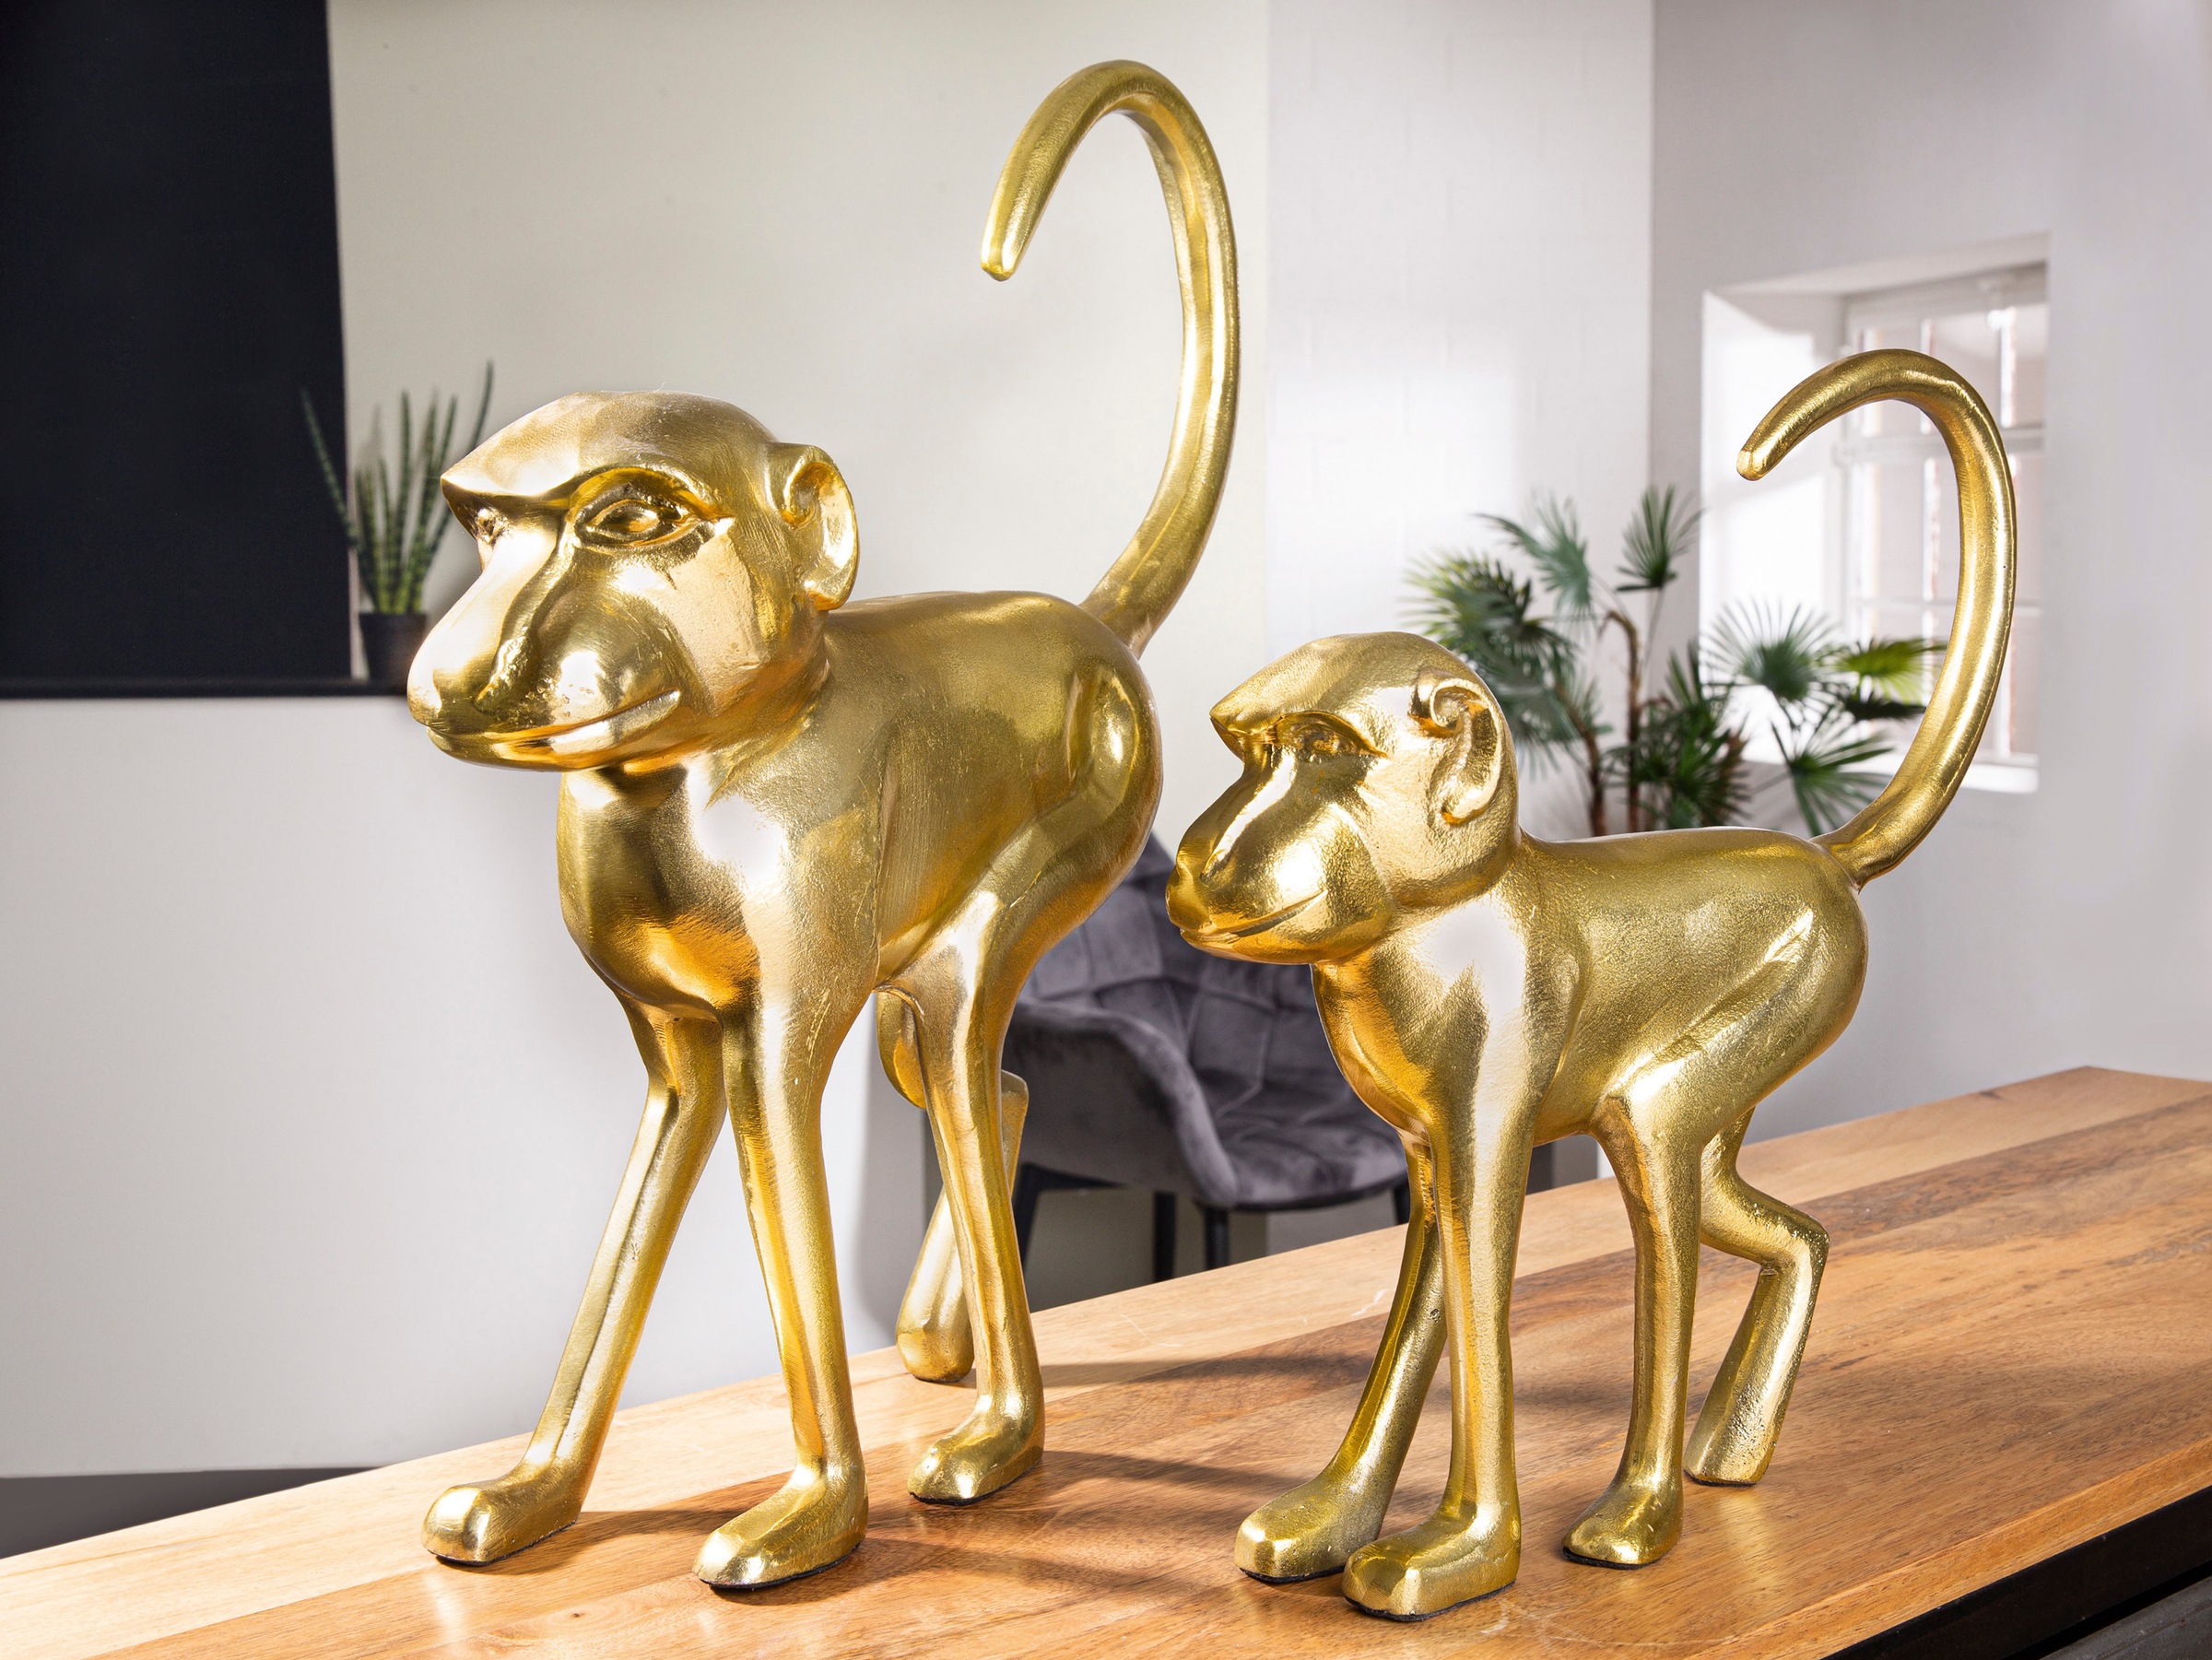 GILDE Tierfigur »Skulptur Monkey« bequem kaufen